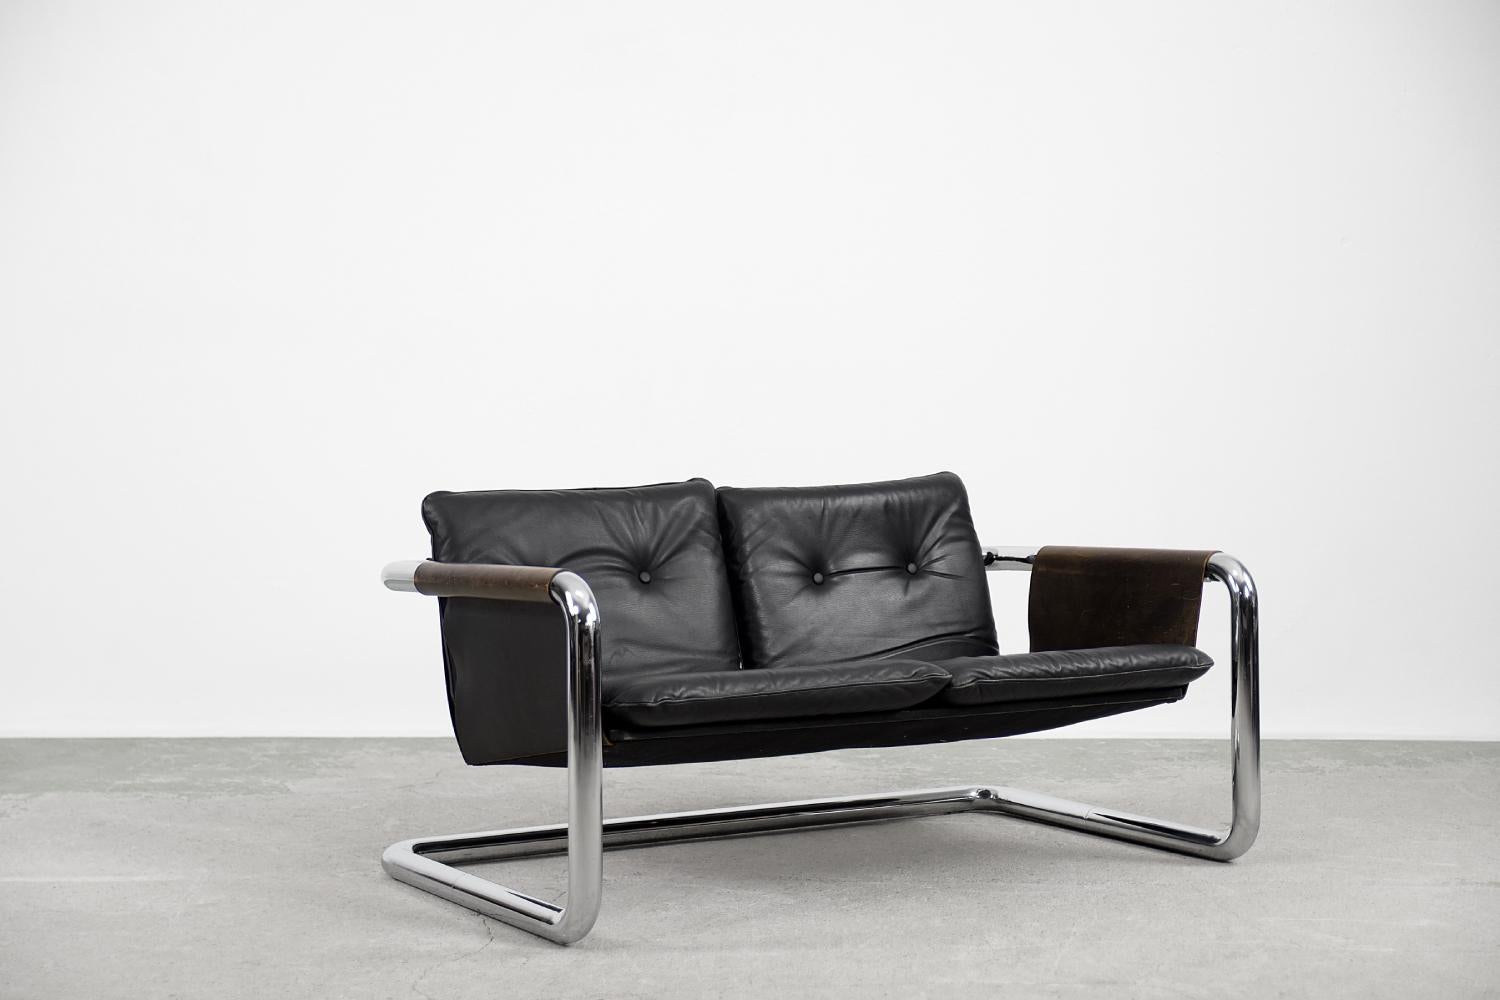 Ce rare canapé en cuir a été conçu dans les années 1950. Une forme faisant référence au design de l'école Bauhaus, où l'objectif était de combiner l'imagination créative, l'art et la technologie avec les connaissances pratiques et l'artisanat. Les